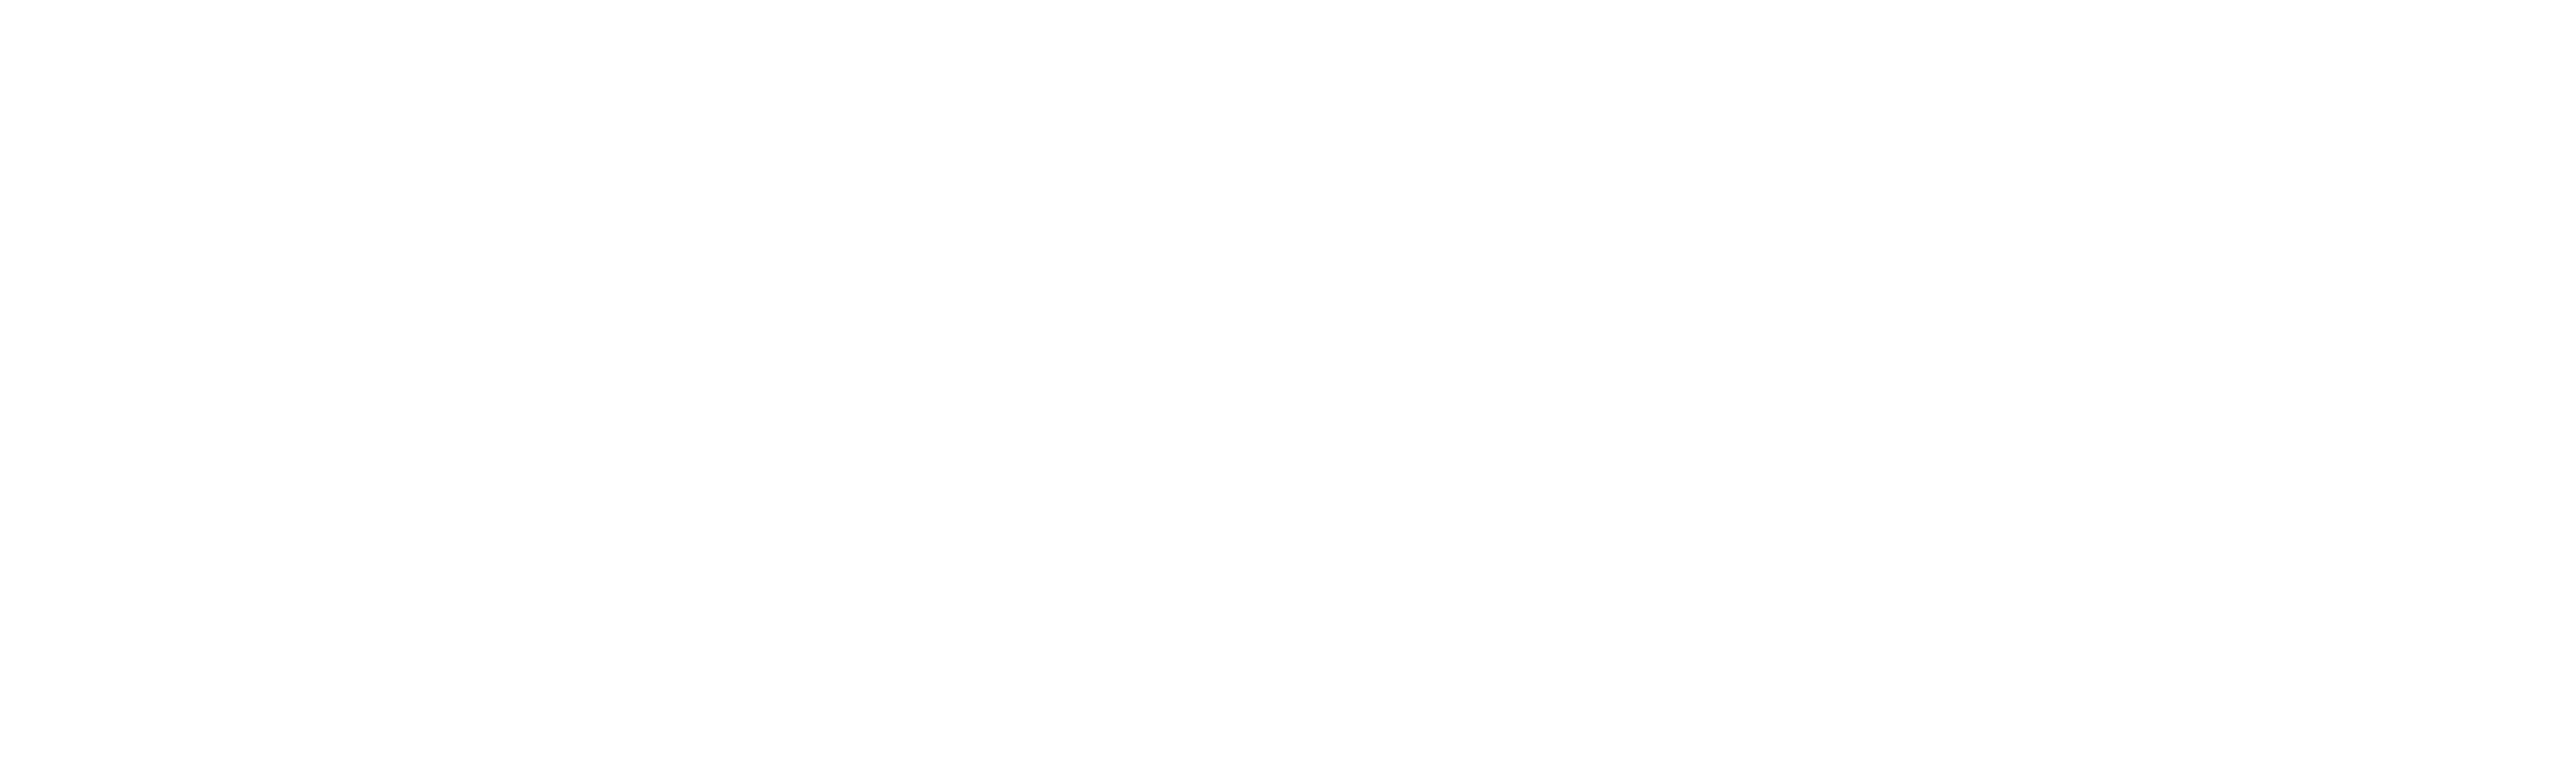 EfT_Arena_Logotype-3_white